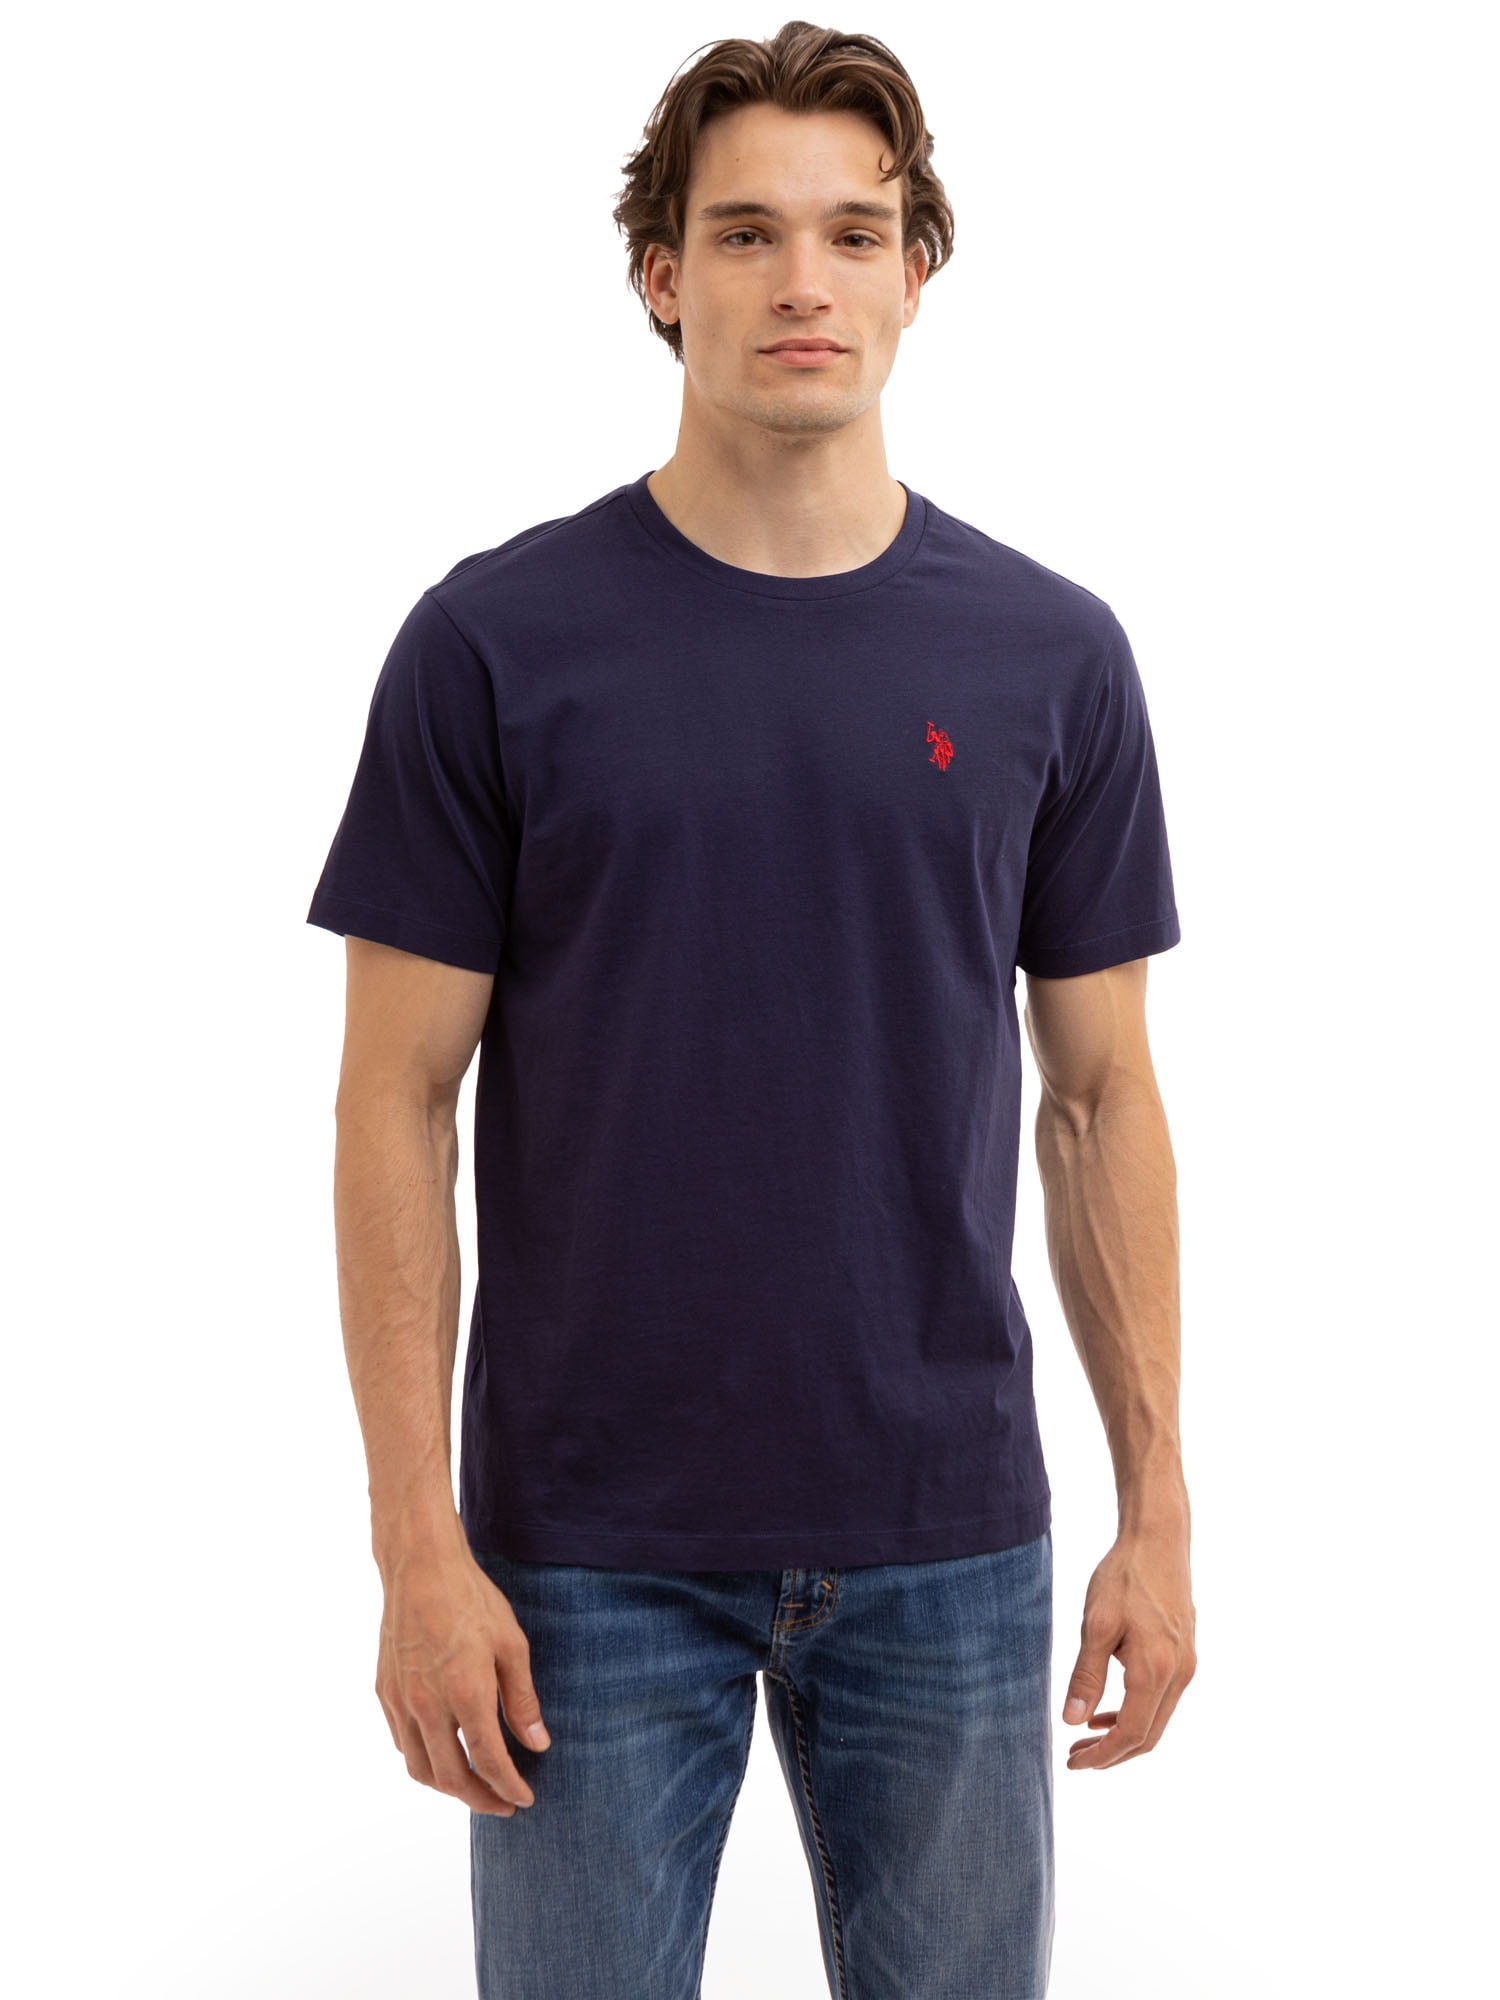 U.S. Polo Assn. Men's Short Sleeve Crew T-Shirt - Walmart.com